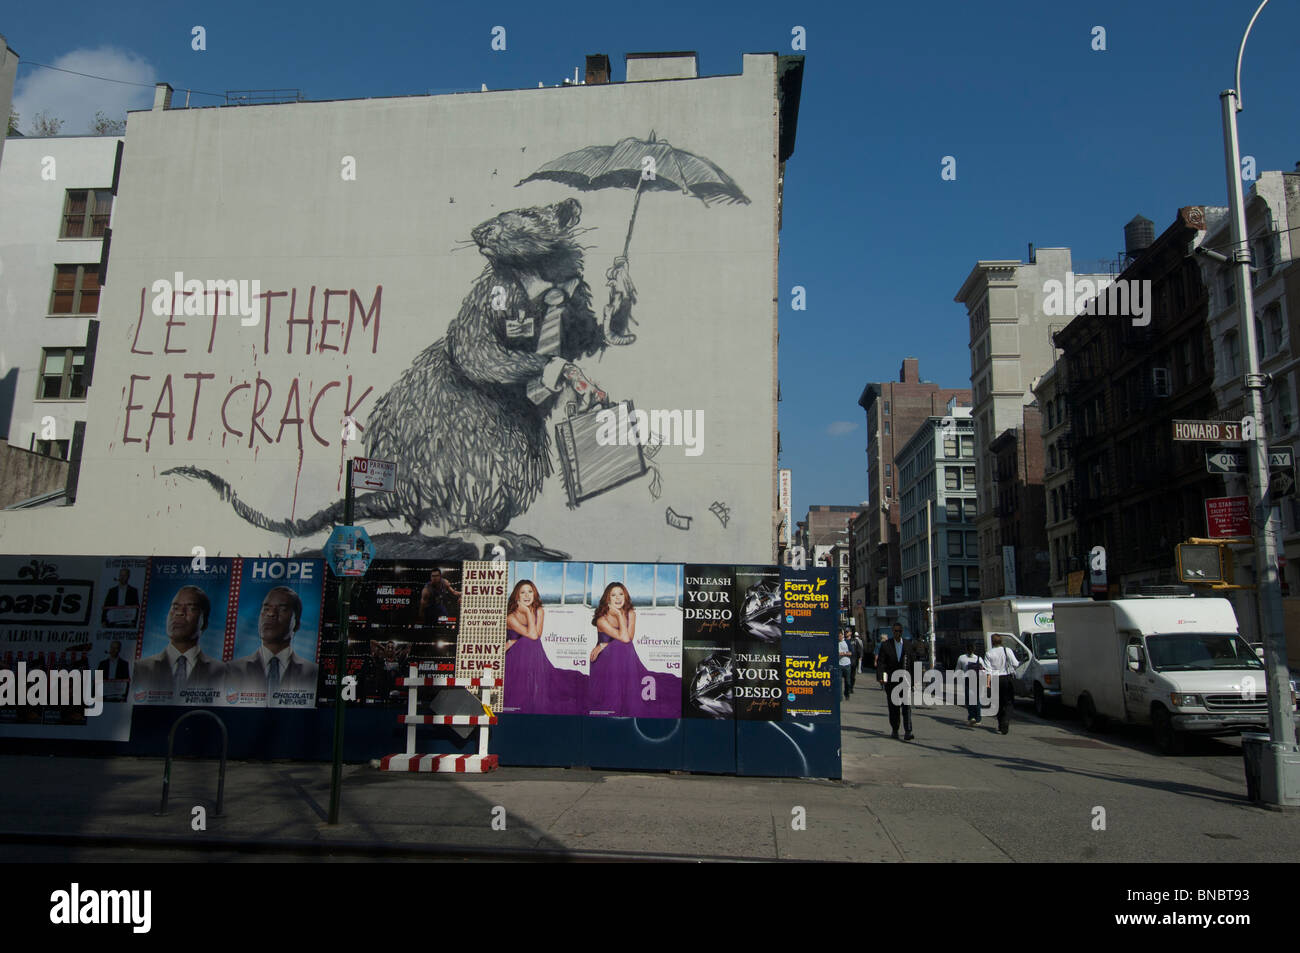 Banksy graffiti, 'let them eat crack' rat avec une mallette pleine d'argent. Howard Street, Manhattan, New York. Banque D'Images